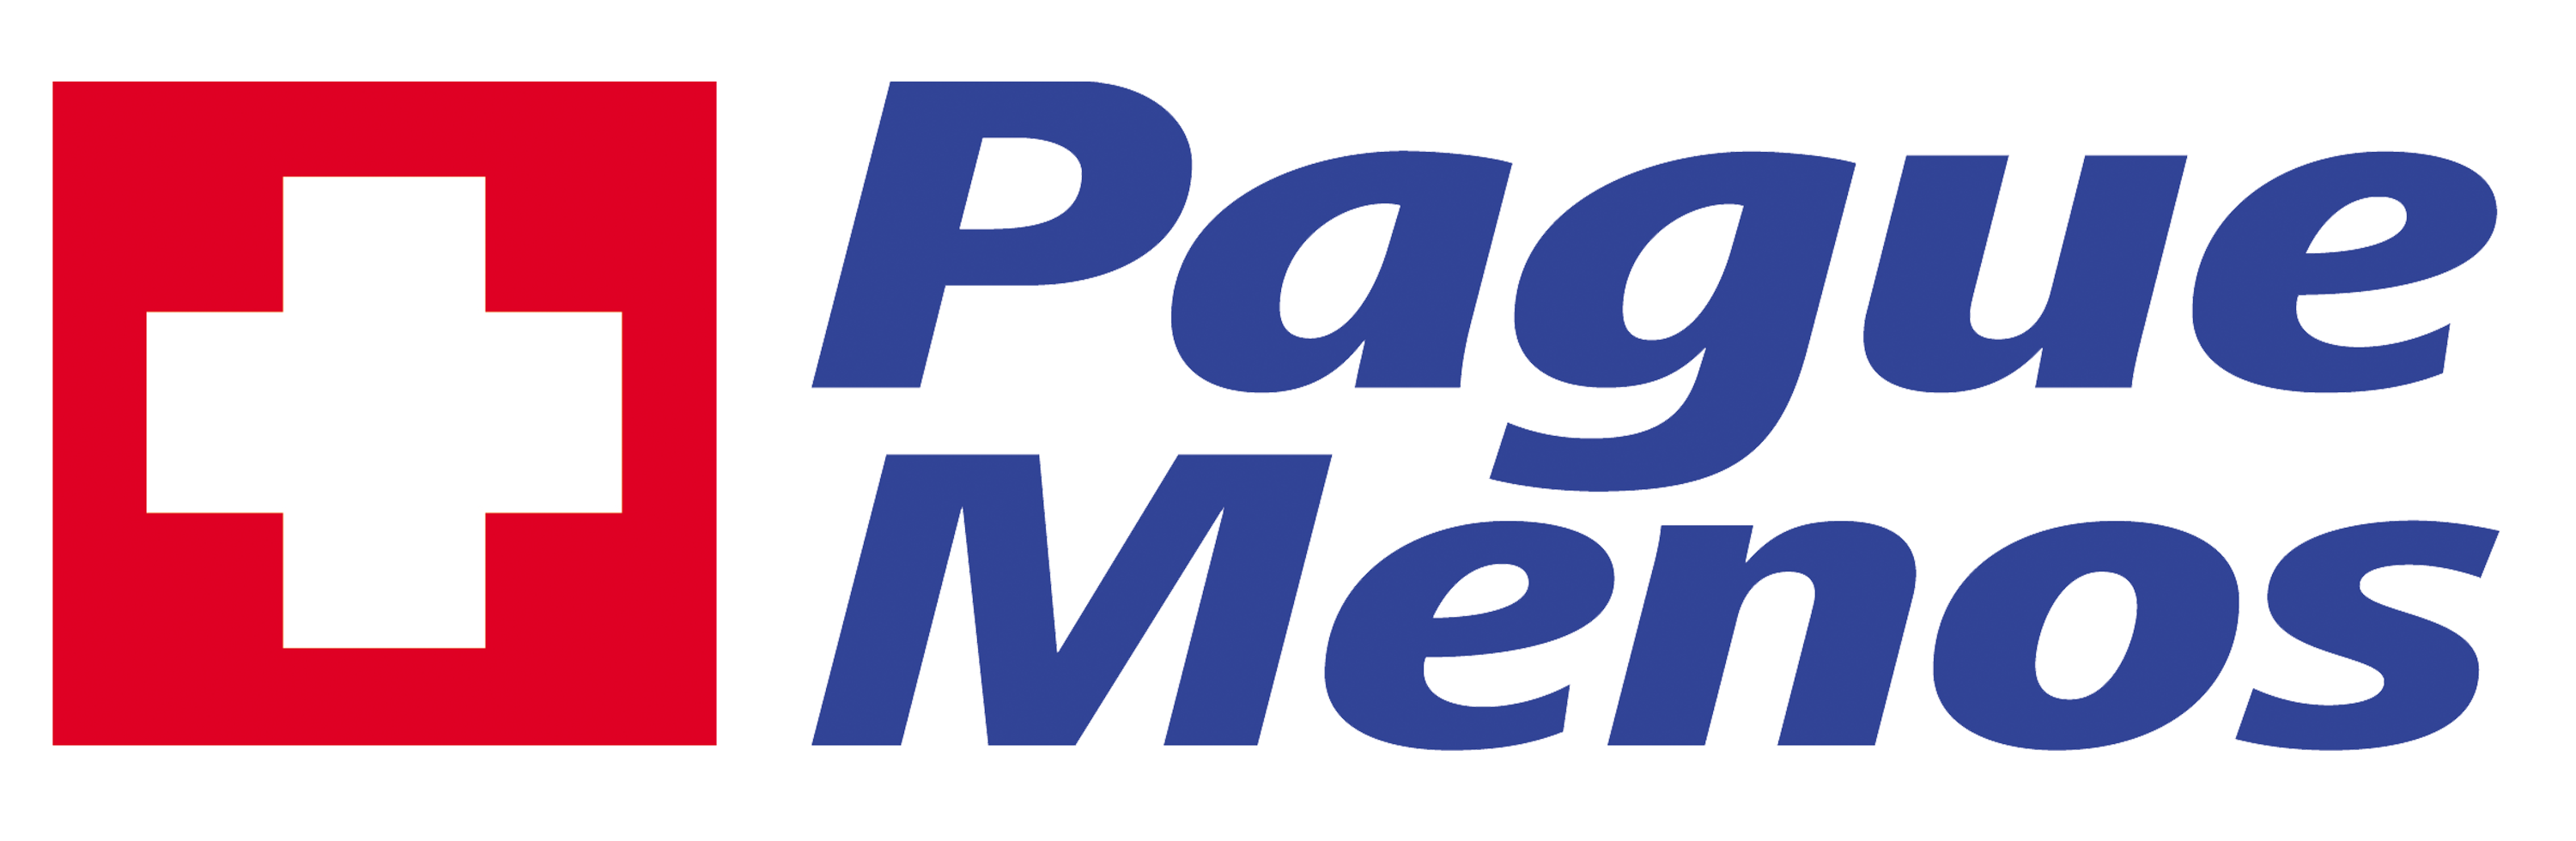 Farmacia Pague Menos- Dorival Caymim BA